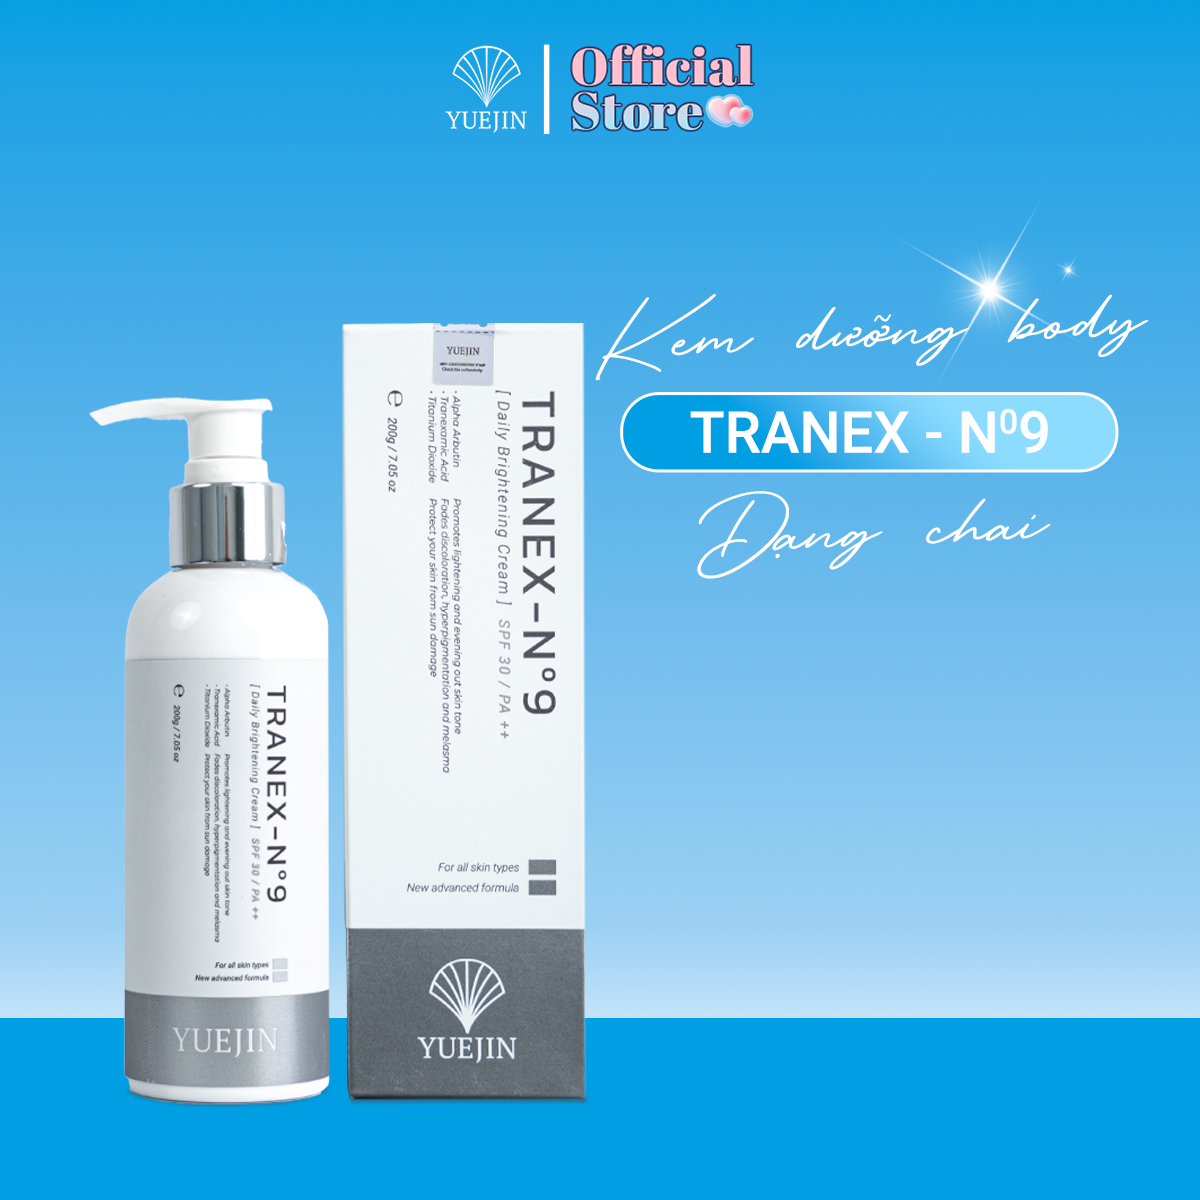 Kem Dưỡng Trắng Da Body TRANEX-No9 dưỡng ẩm, sáng da và giảm thâm - Yuejin